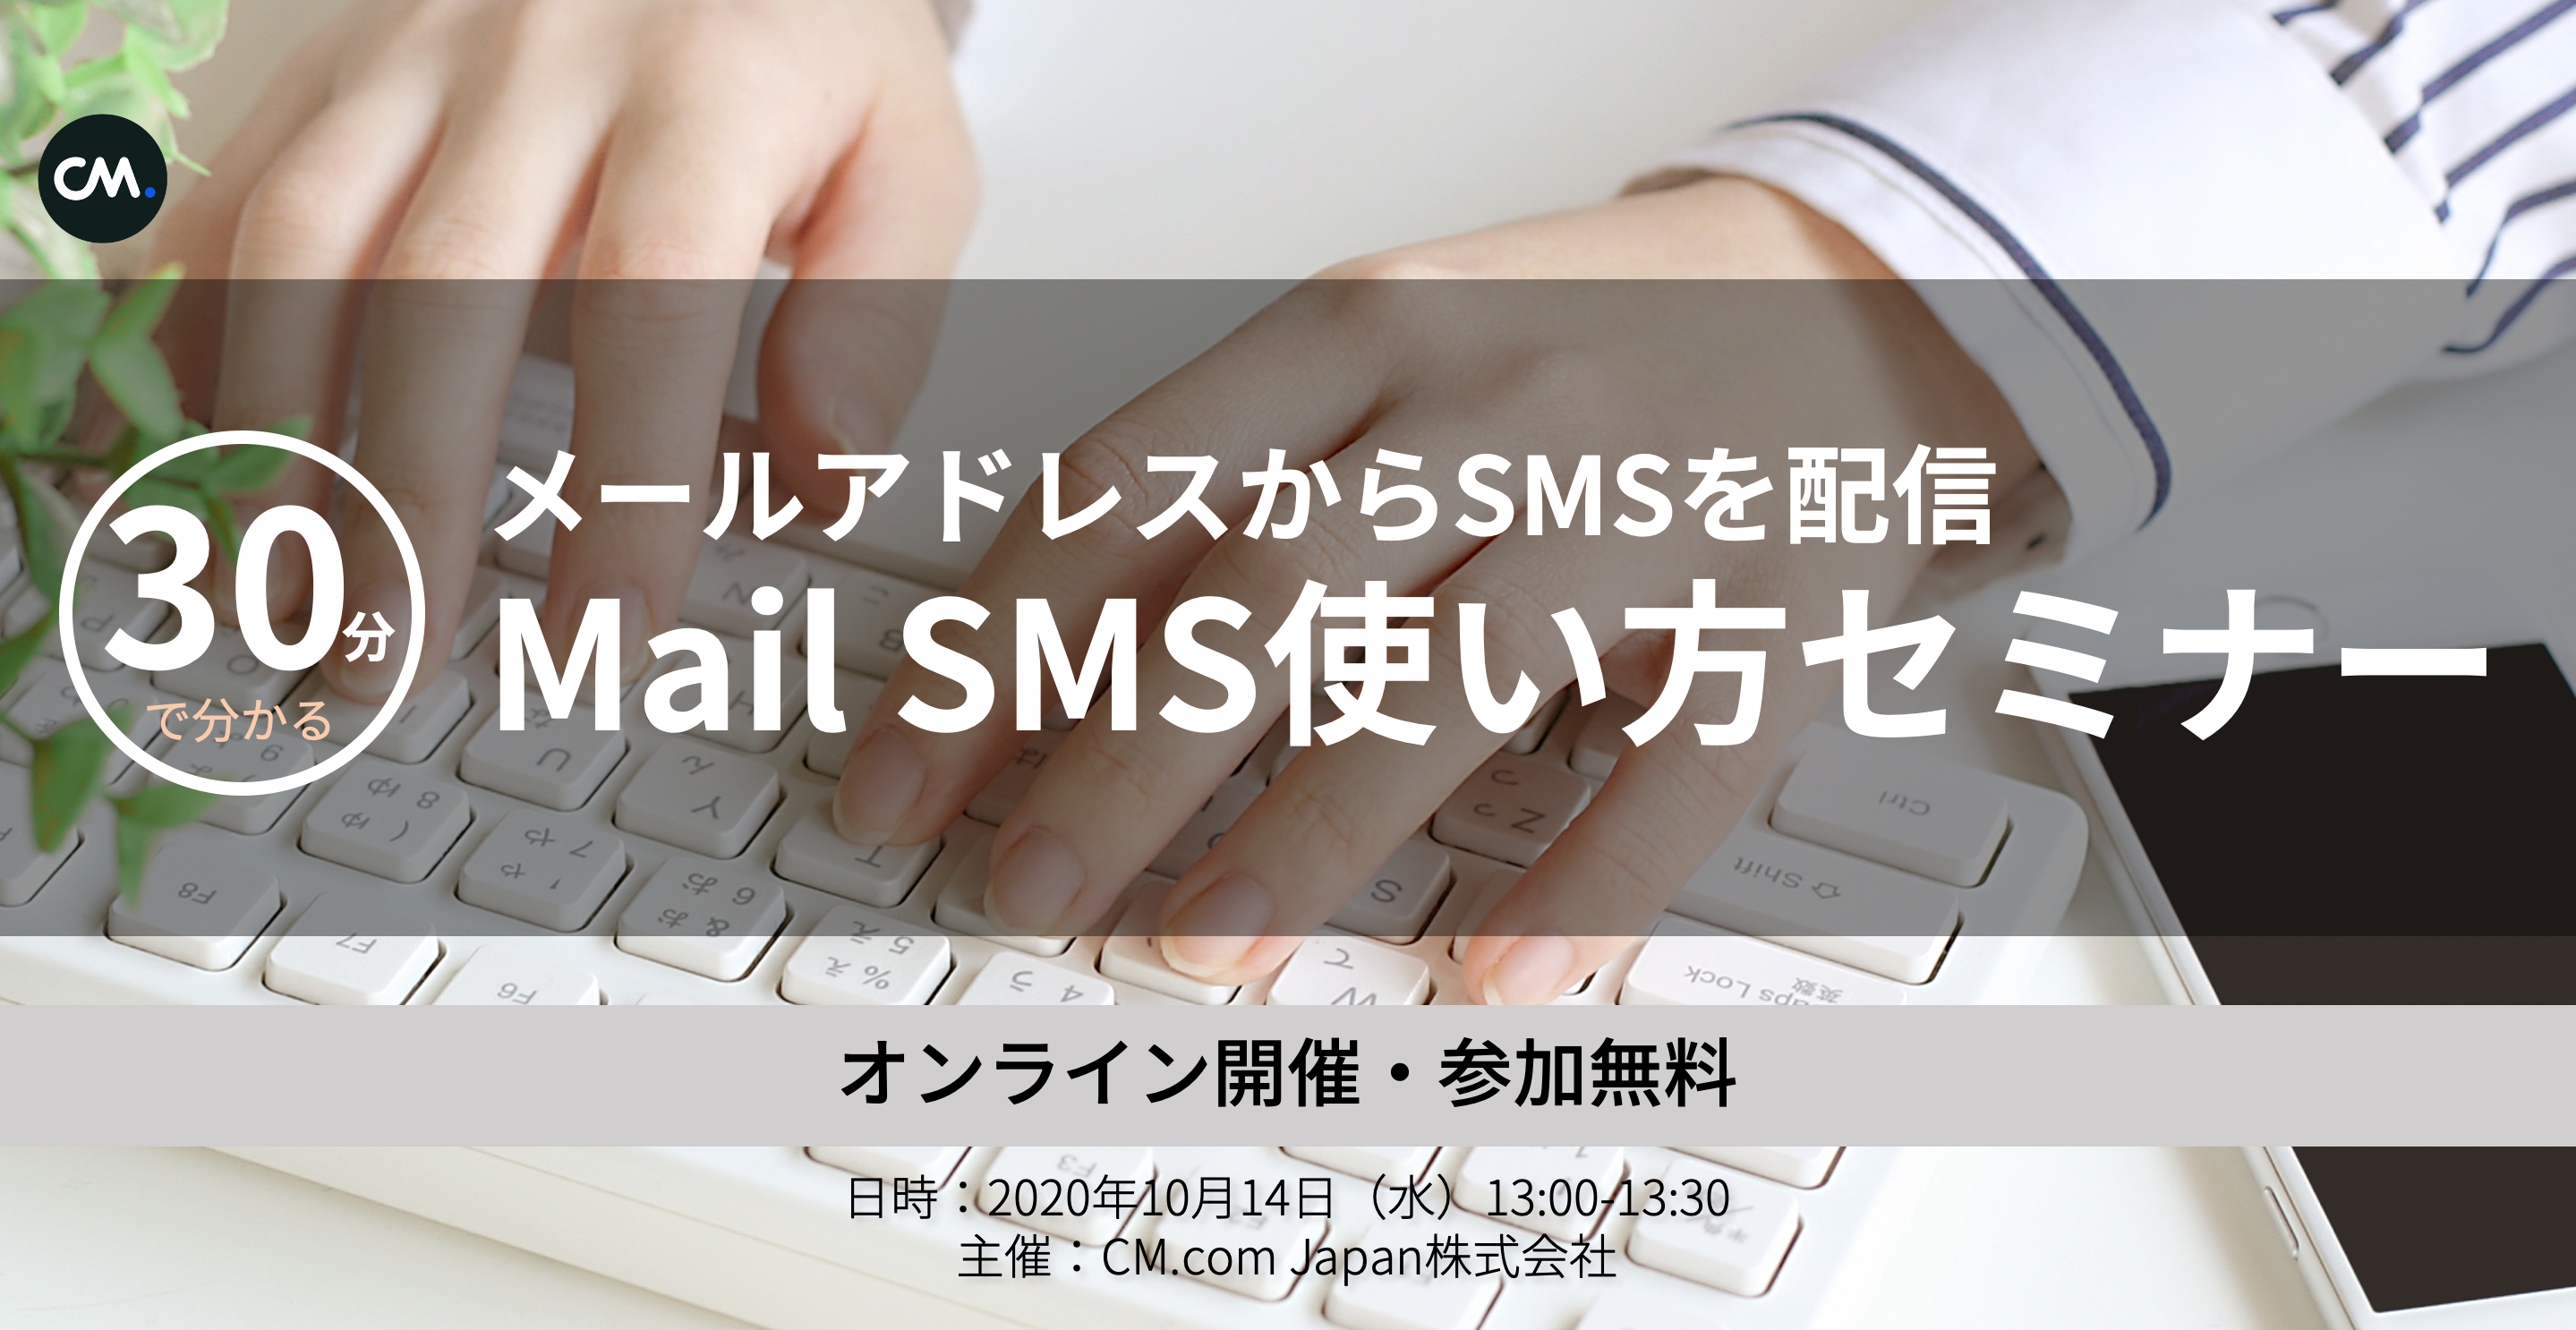 日本初 メールアドレスからsmsを配信 Mail Sms使い方セミナー開催 Cm Com Japan 株式会社のプレスリリース